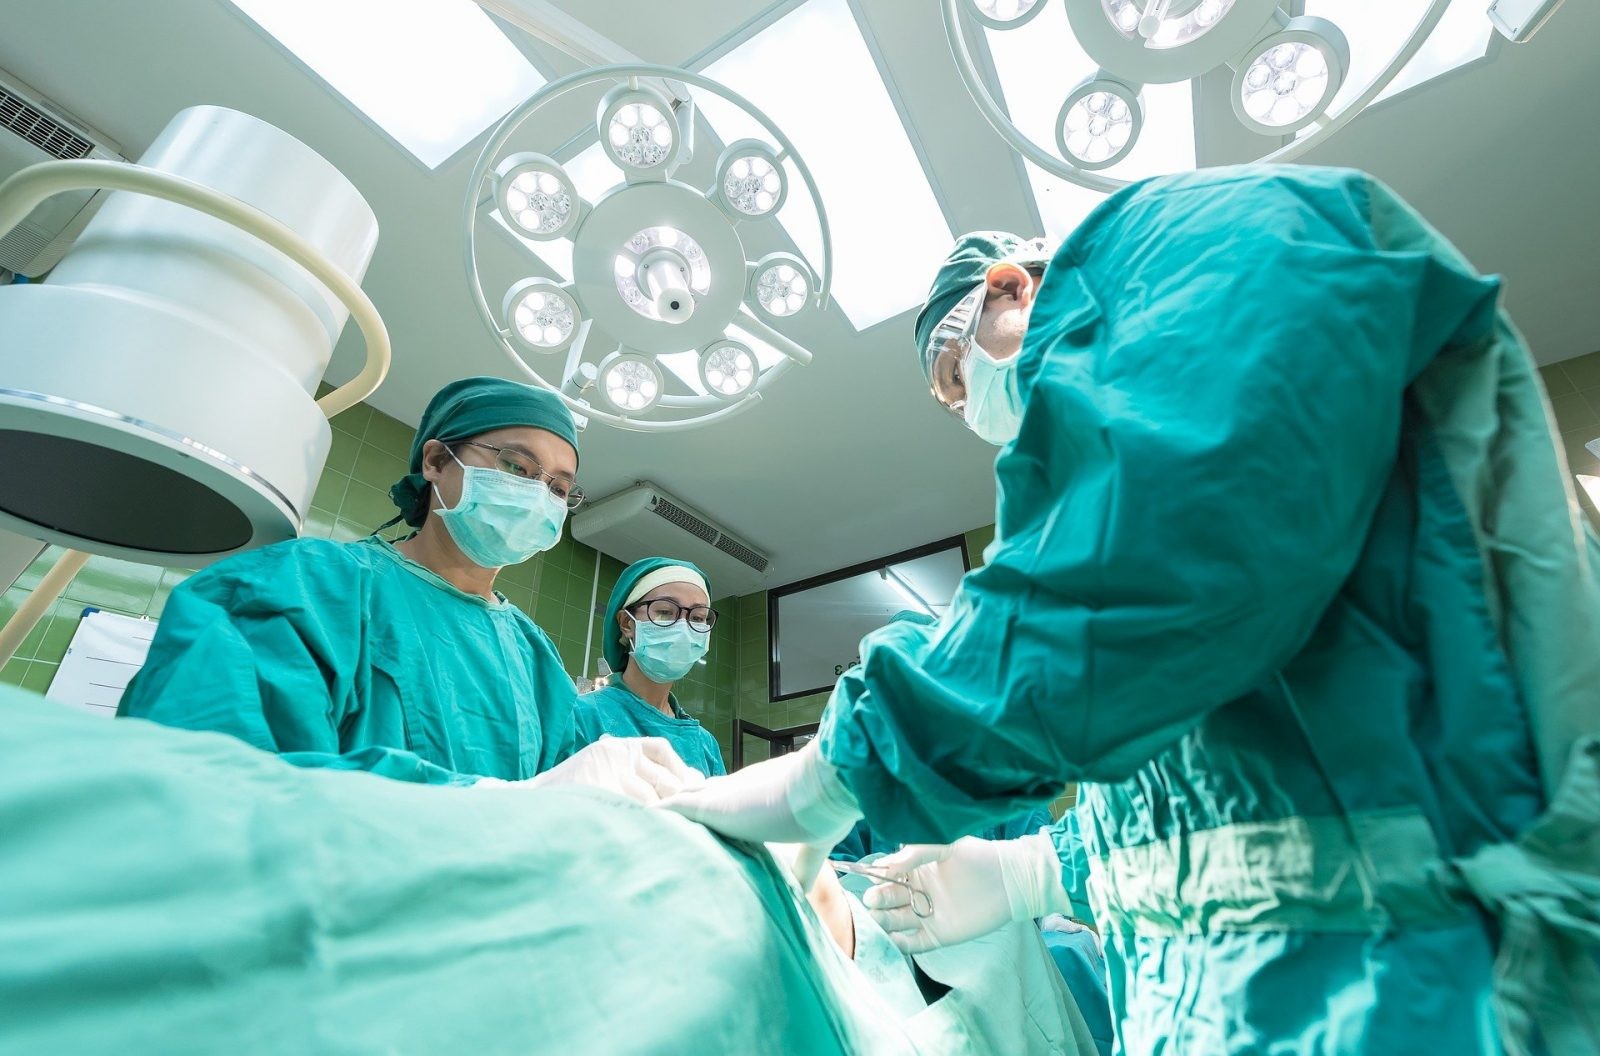 Kobiety częściej umierają, gdy operuje chirurg-mężczyzna. Winne „ukryte uprzedzenia”?